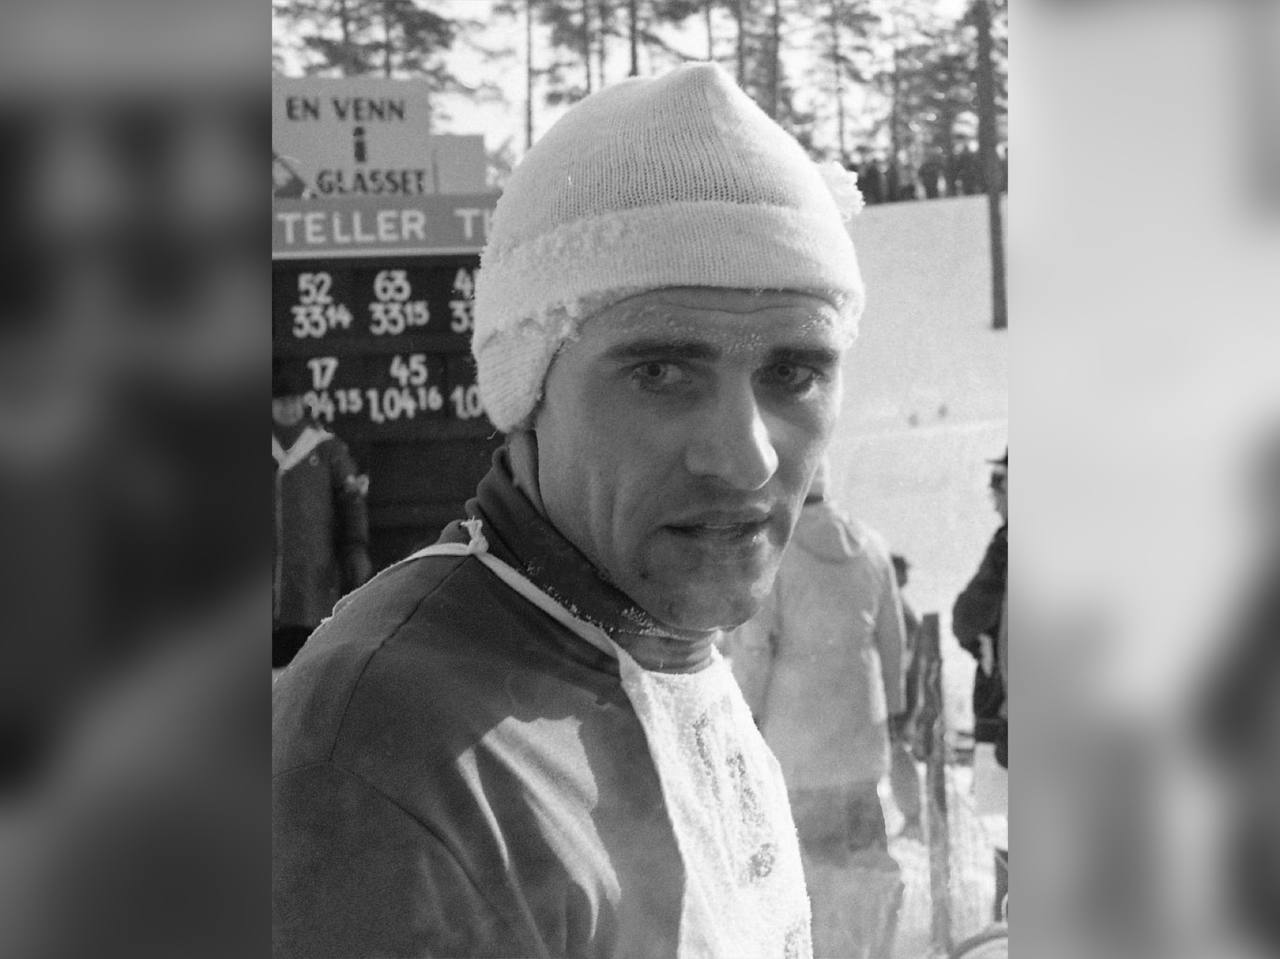 Умер почётный вице-президент Международной федерации лыжного спорта и сноубординга Анатолий Акентьев